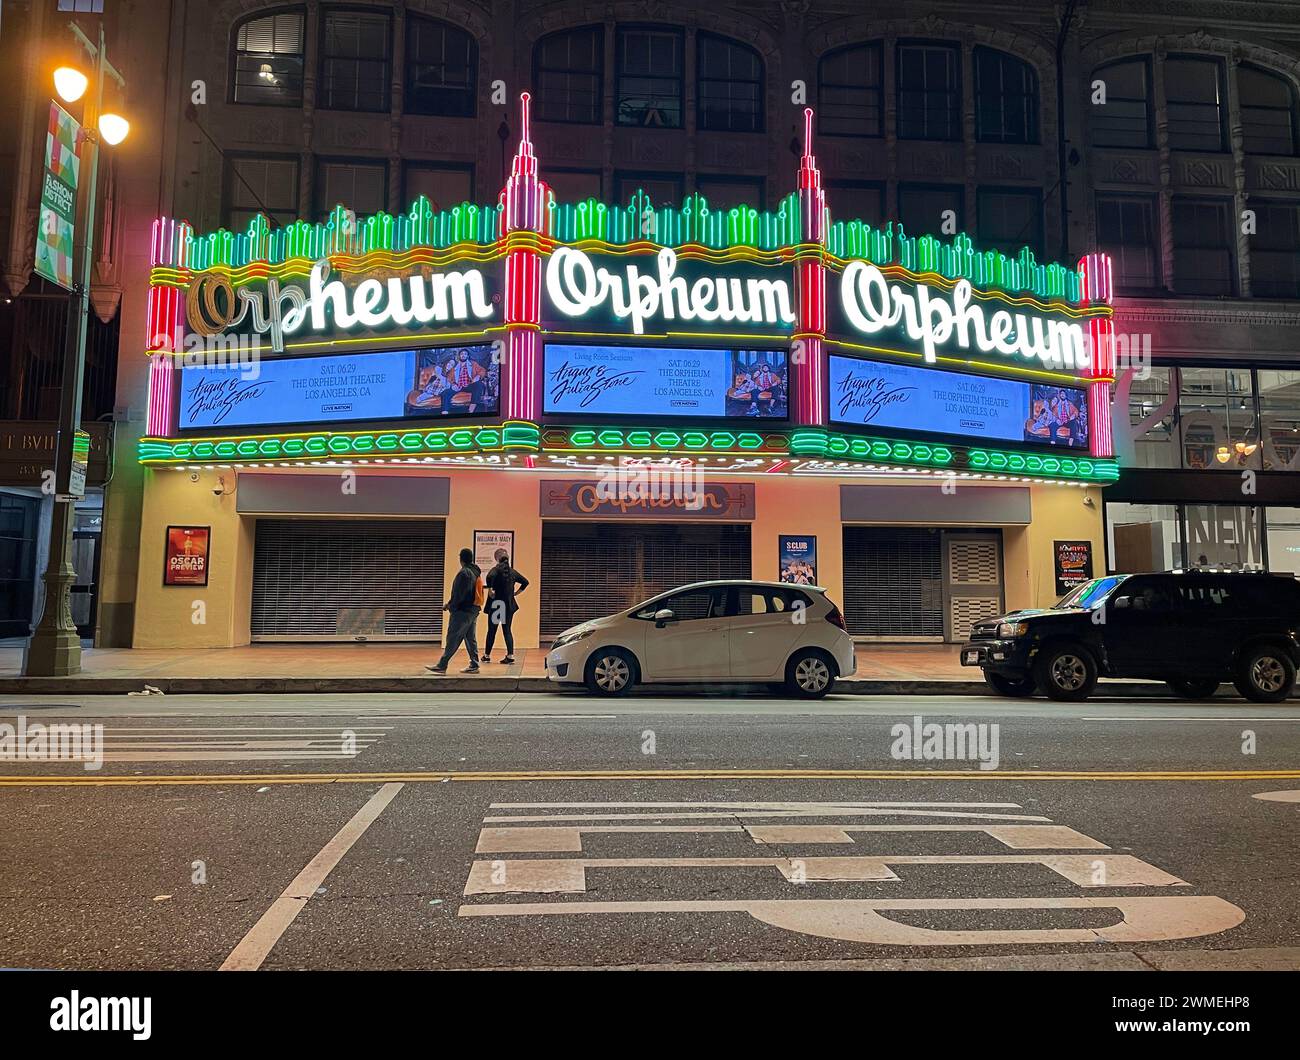 Orpheum, Théâtre, art déco, architecture, nuit, néon, lumière, marquise, centre-ville, Los Angeles, Californie, États-Unis Banque D'Images